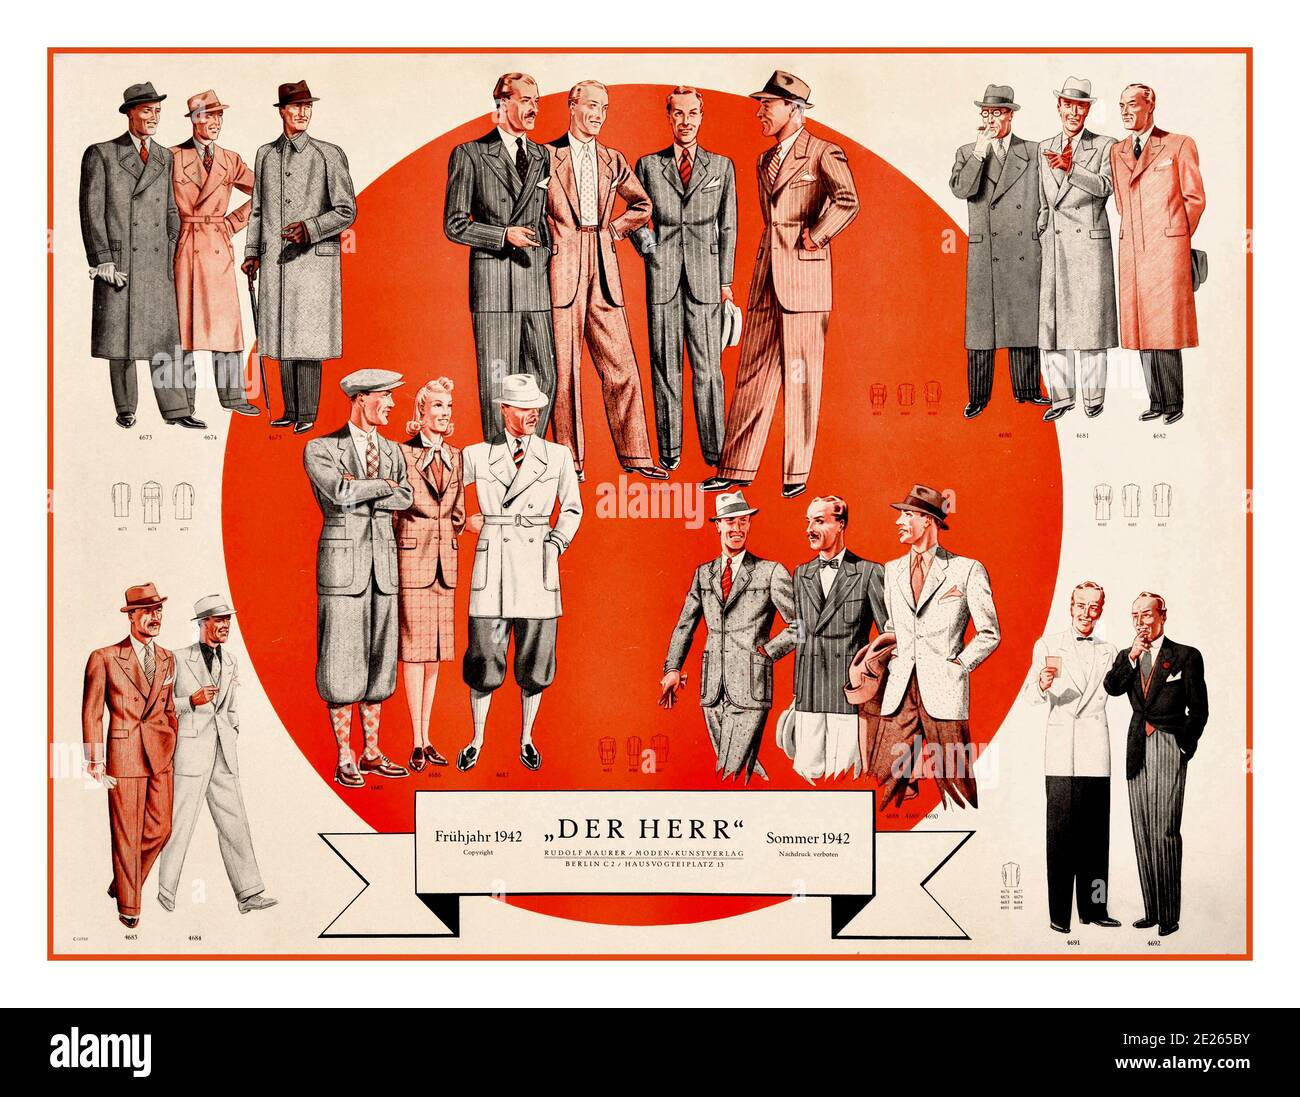 Mode hommes des années 1940 'DERR HERR' Allemagne affiche publicitaire de  vêtements d'époque pour hommes publiée en Allemagne nazie pendant la  Seconde Guerre mondiale. L'affiche illustre les derniers modèles de mode  hommes